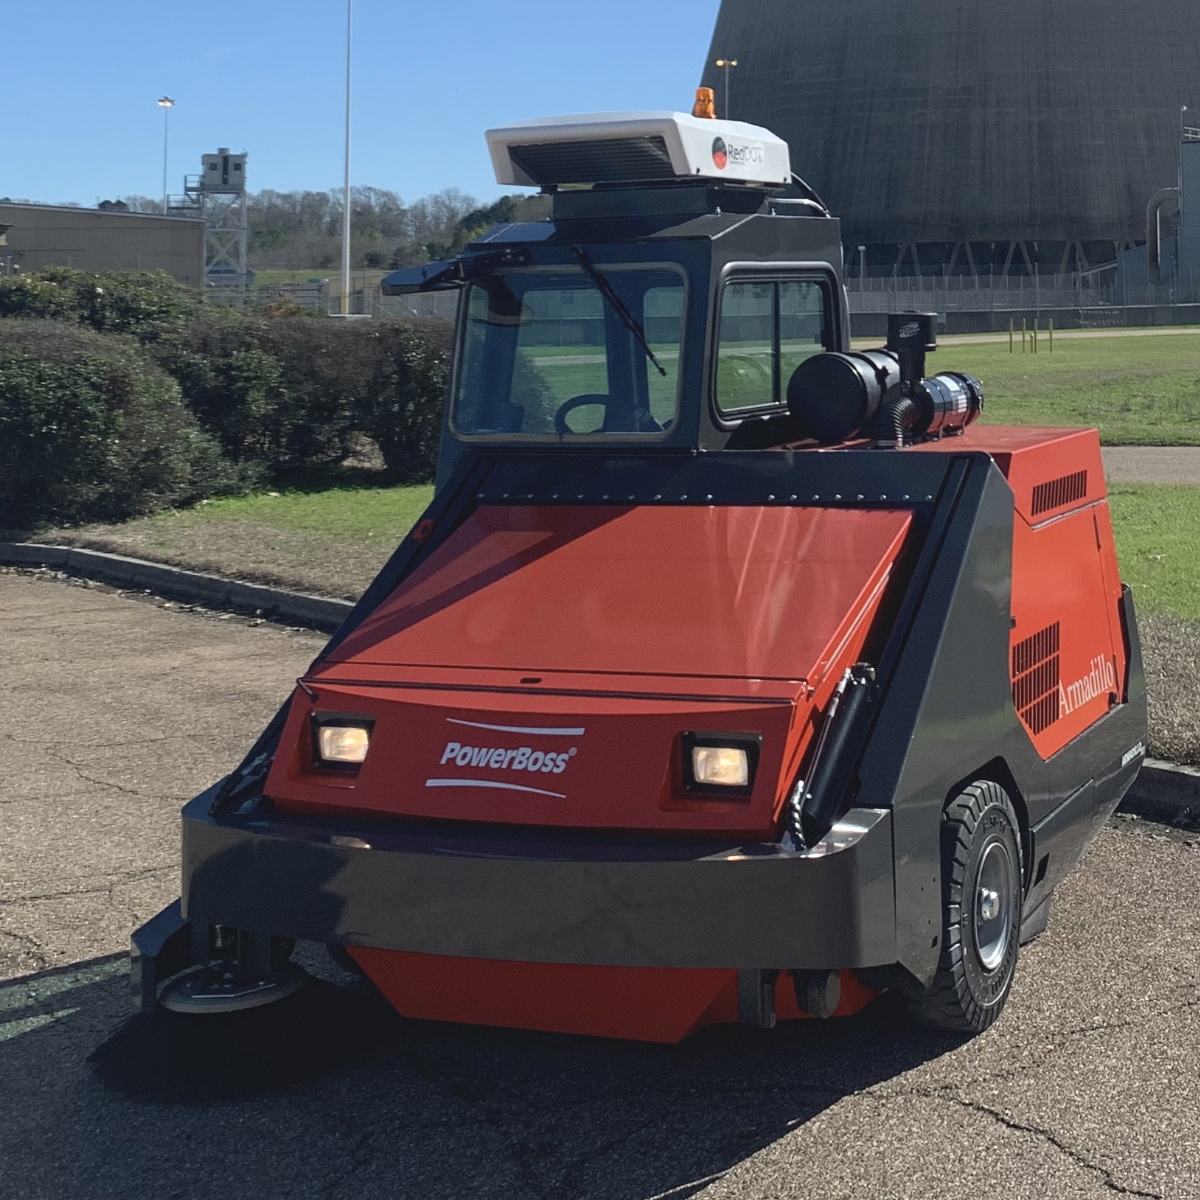 Kubota Tier IV – LP, Gasoline or Diesel Engine
2,000 lb. Full Rotating Hopper